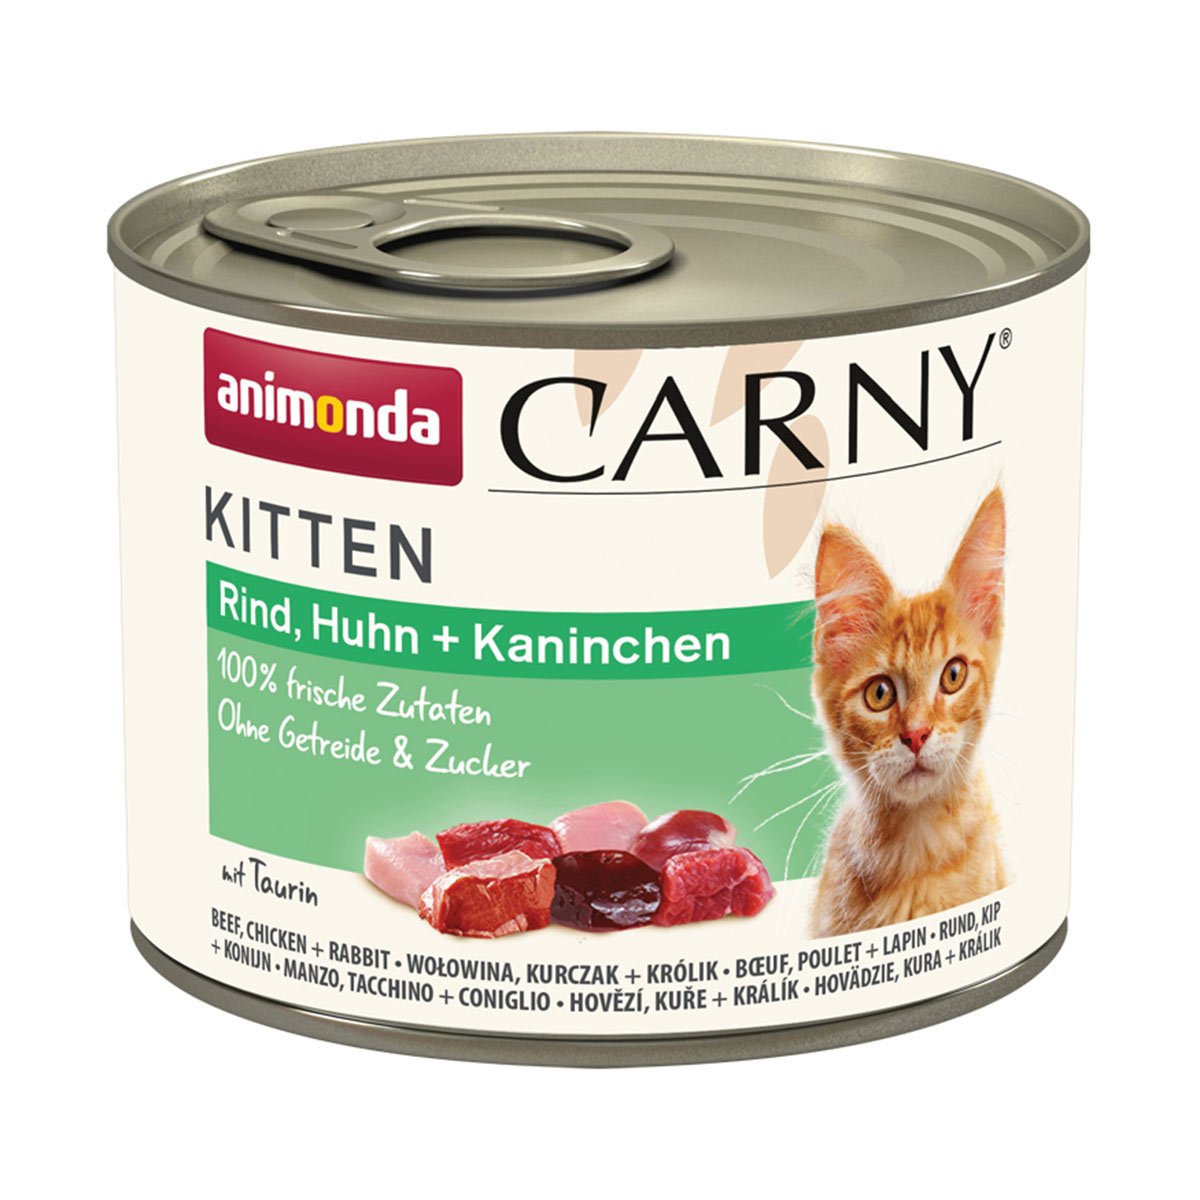 animonda Carny Kitten Rind